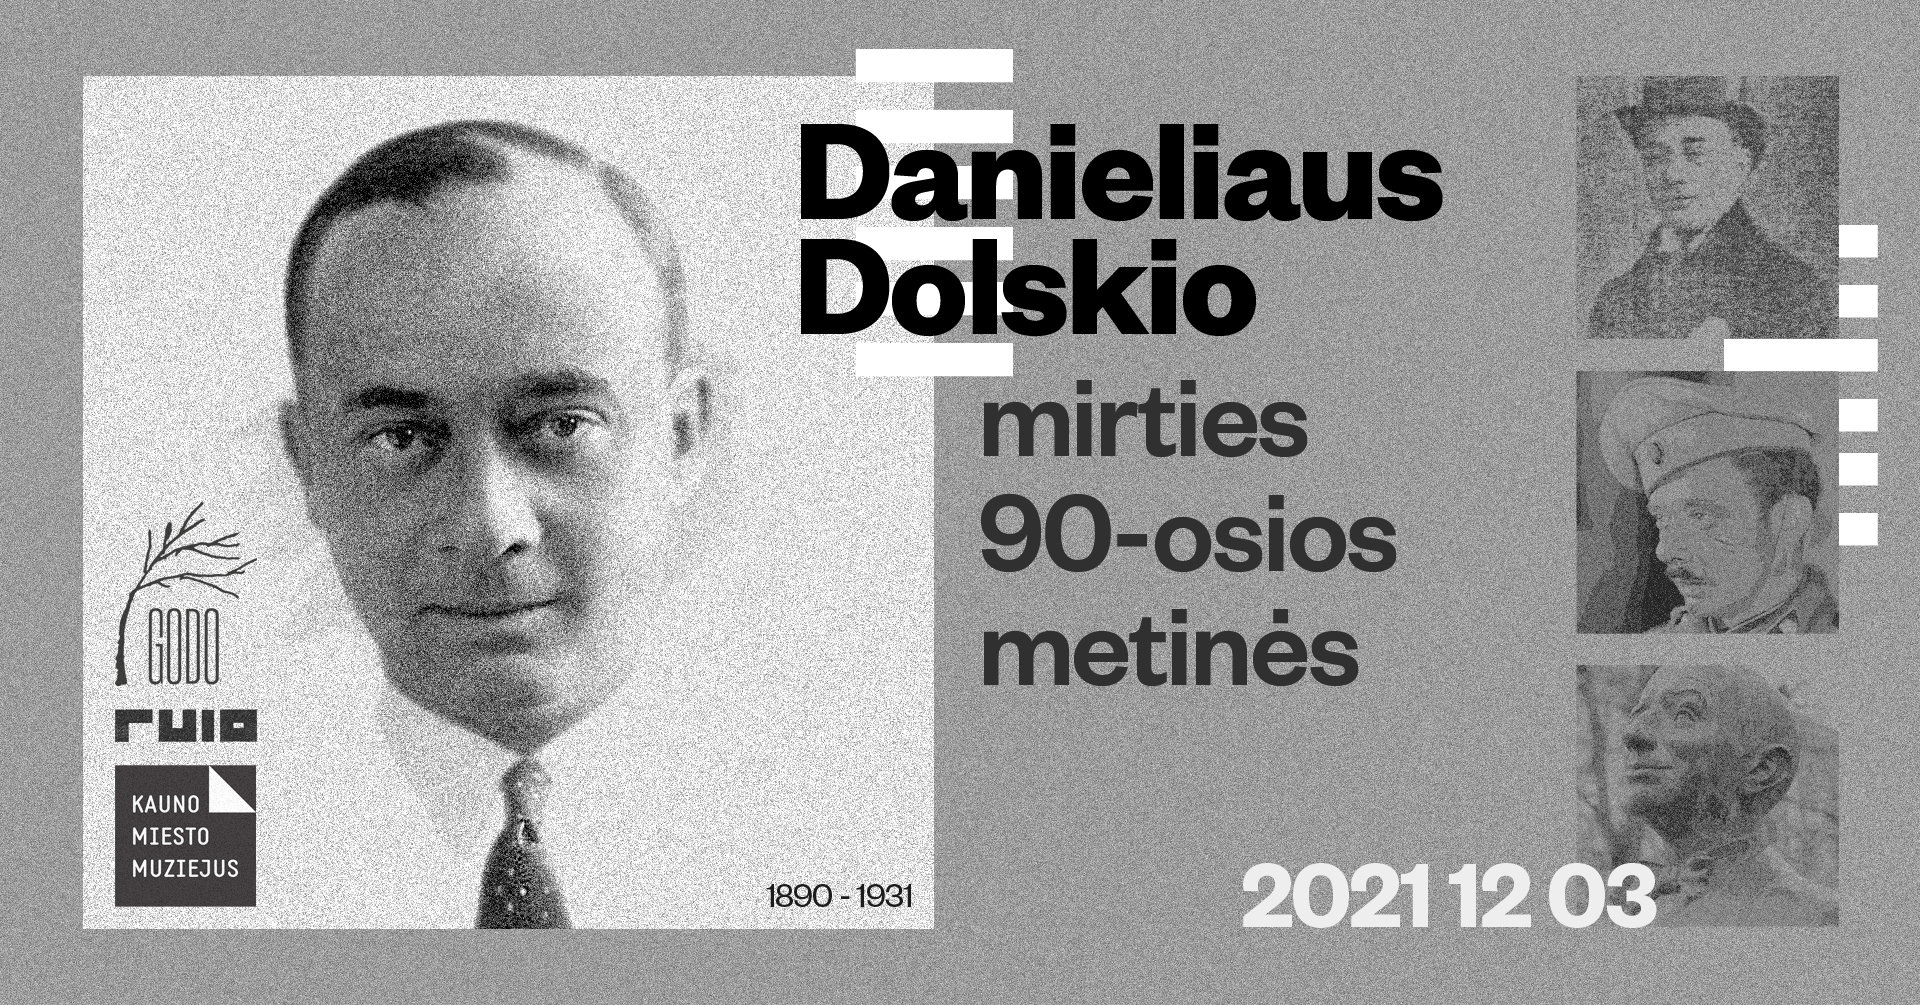 D. Dolskio mirties 90-osios metinės